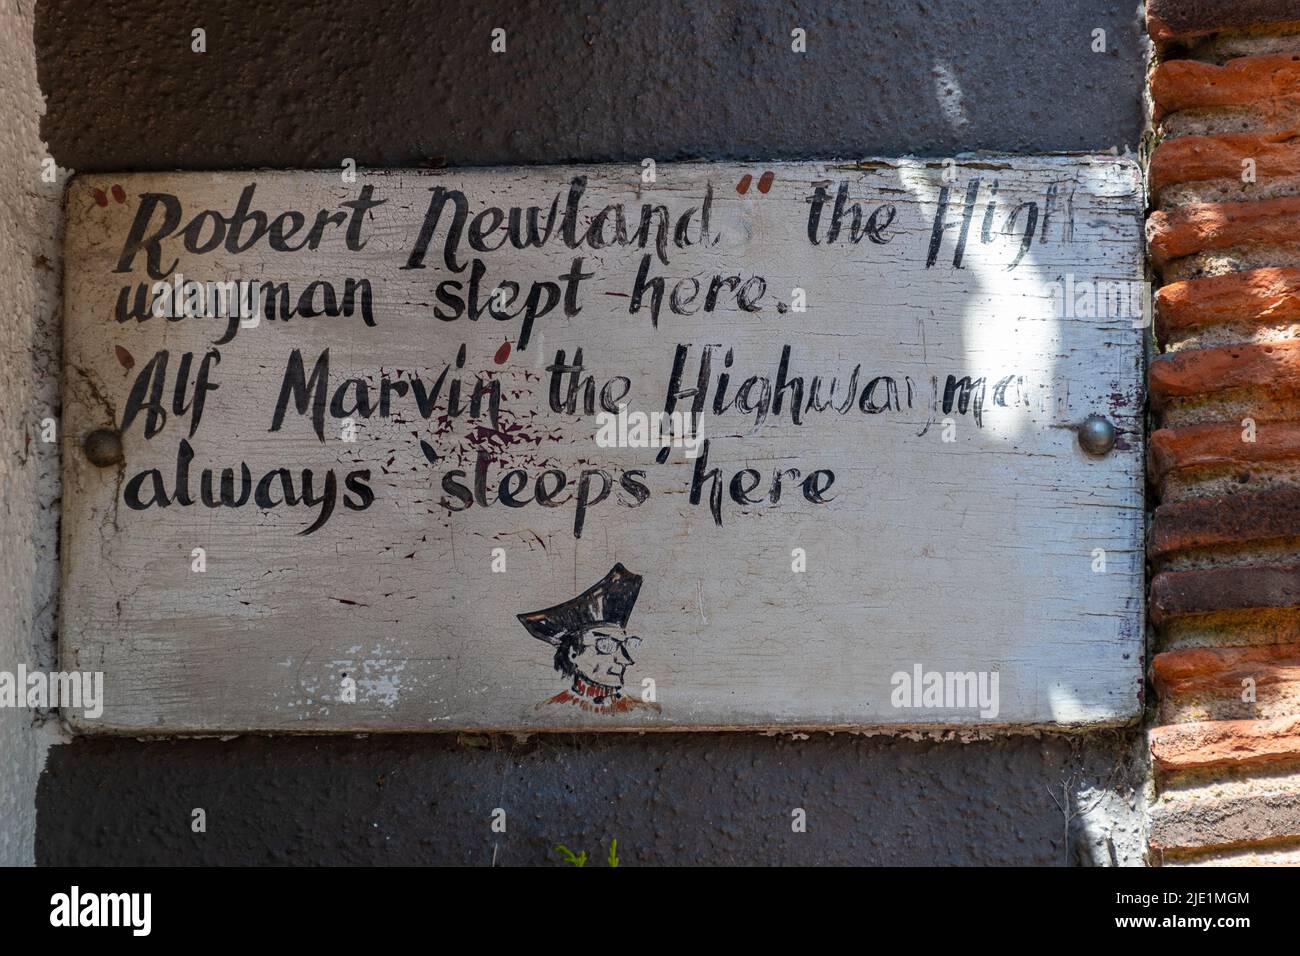 The Bulls Head pub dans West Clandon village, Surrey, Angleterre, Royaume-Uni. Un panneau indiquant Robert Newland, l'homme de montagne, a dormi ici. Banque D'Images